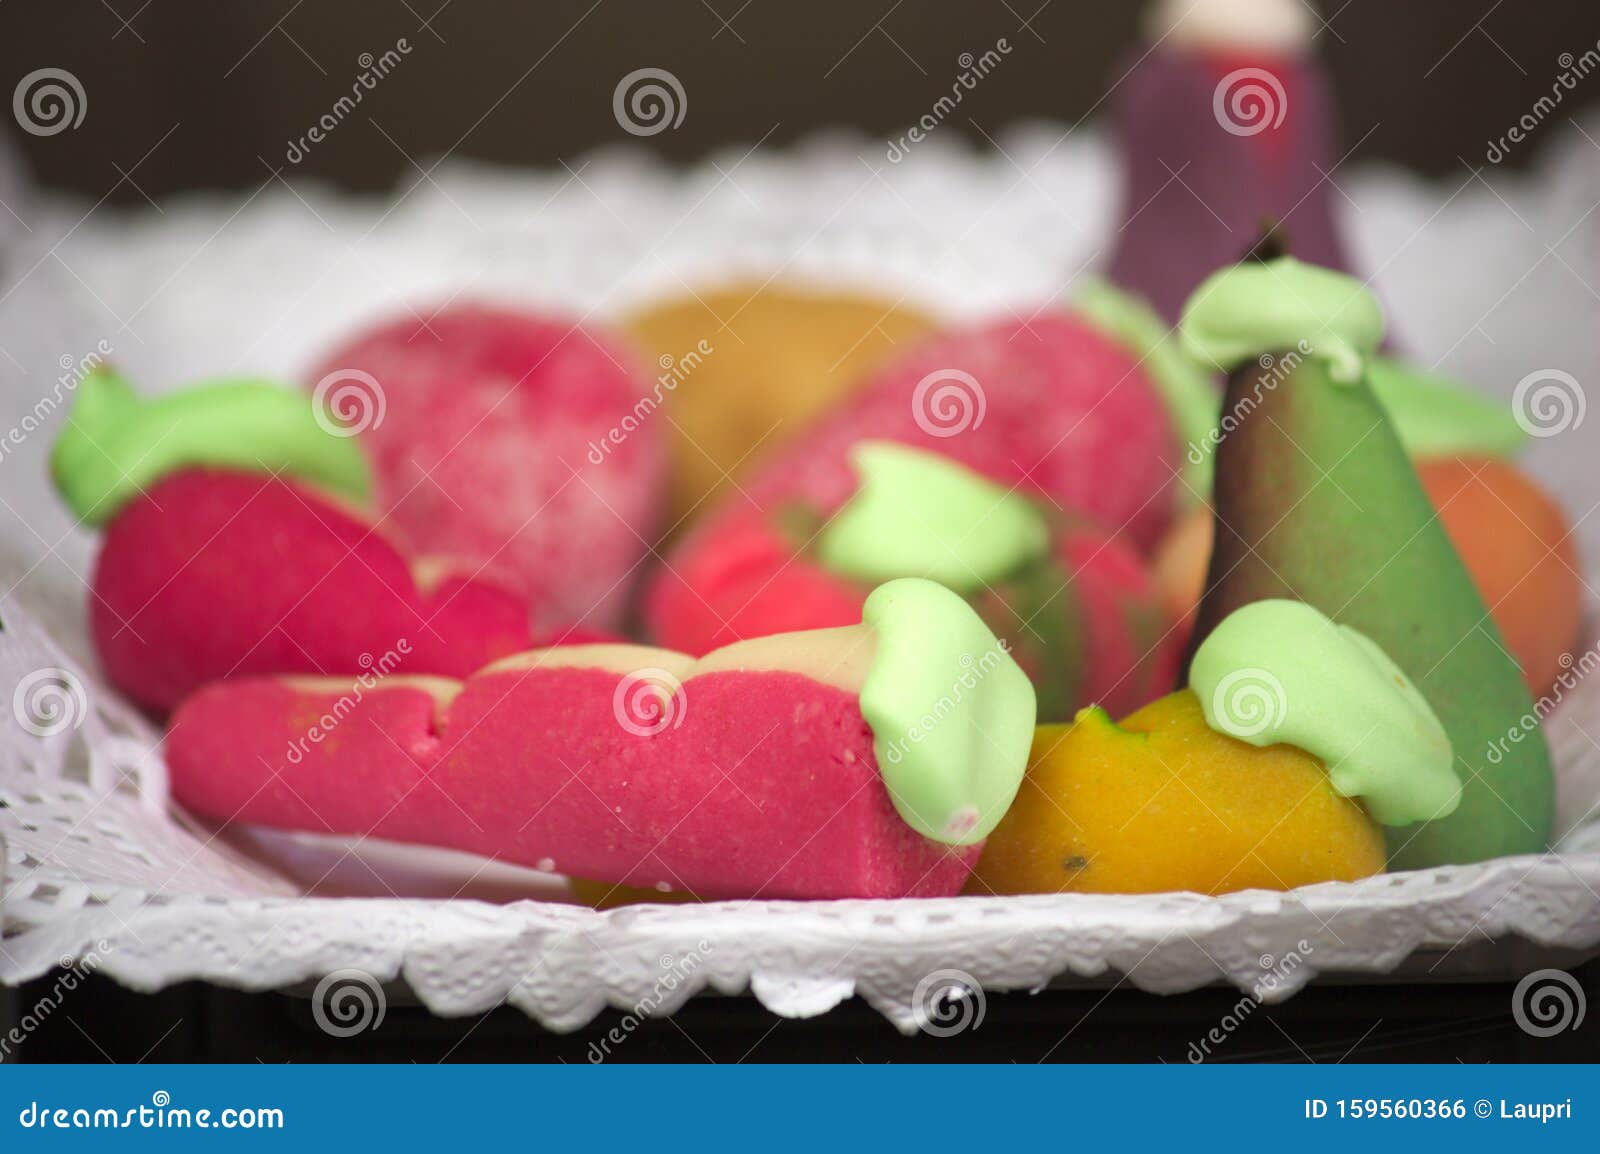 Fach Aus Marzipan-Bonbons Mit Fruchtform Stockfoto - Bild von muster ...